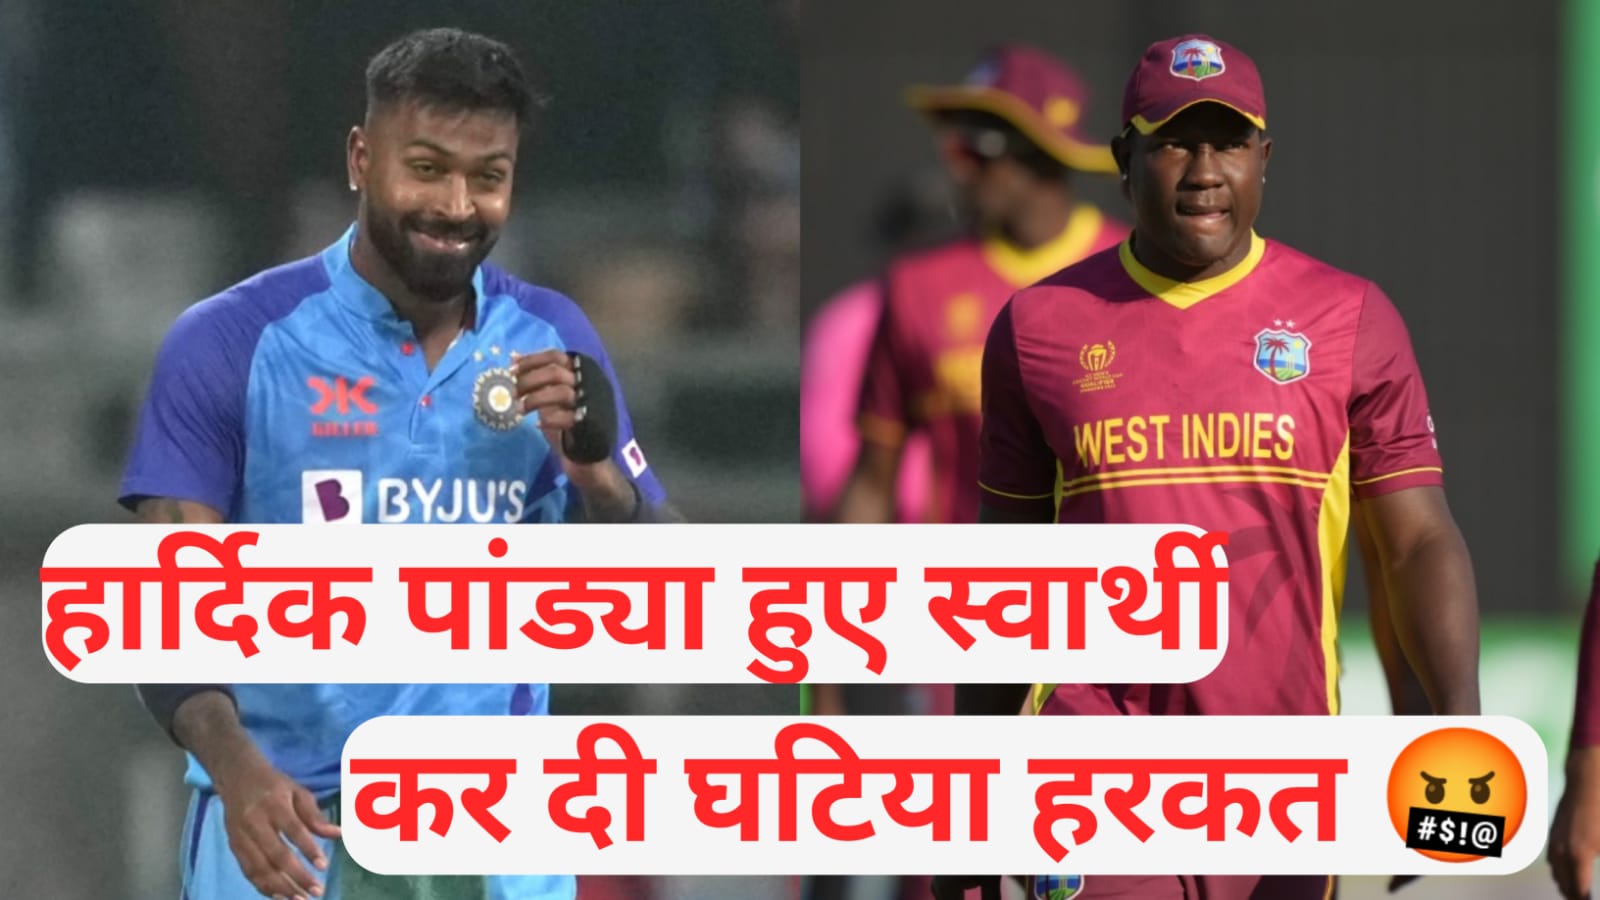 IND vs WI cricket